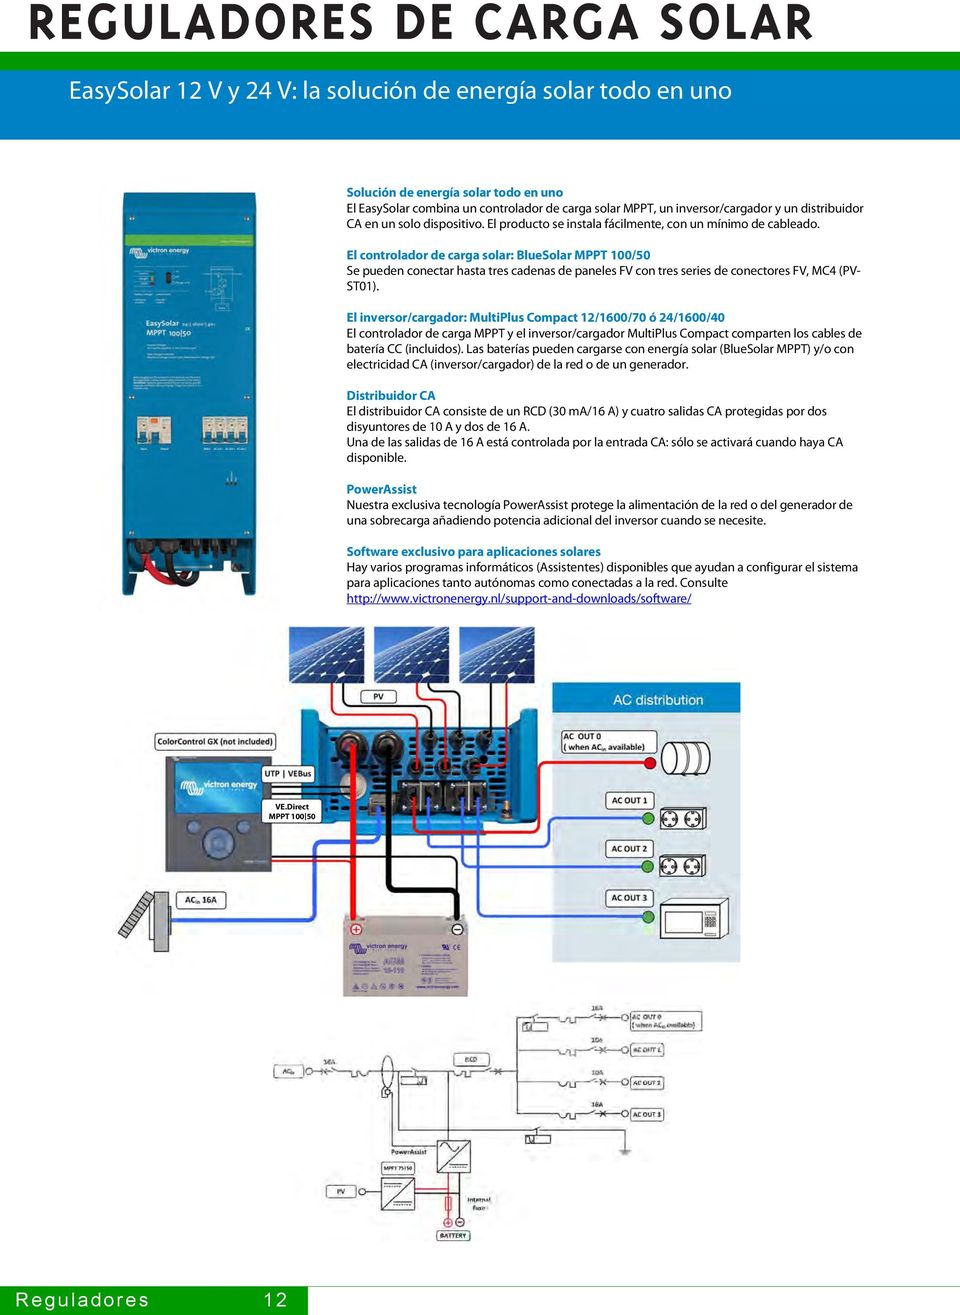 El controlador de carga solar: BlueSolar MPPT 100/50 Se pueden conectar hasta tres cadenas de paneles FV con tres series de conectores FV, MC4 (PV- ST01).